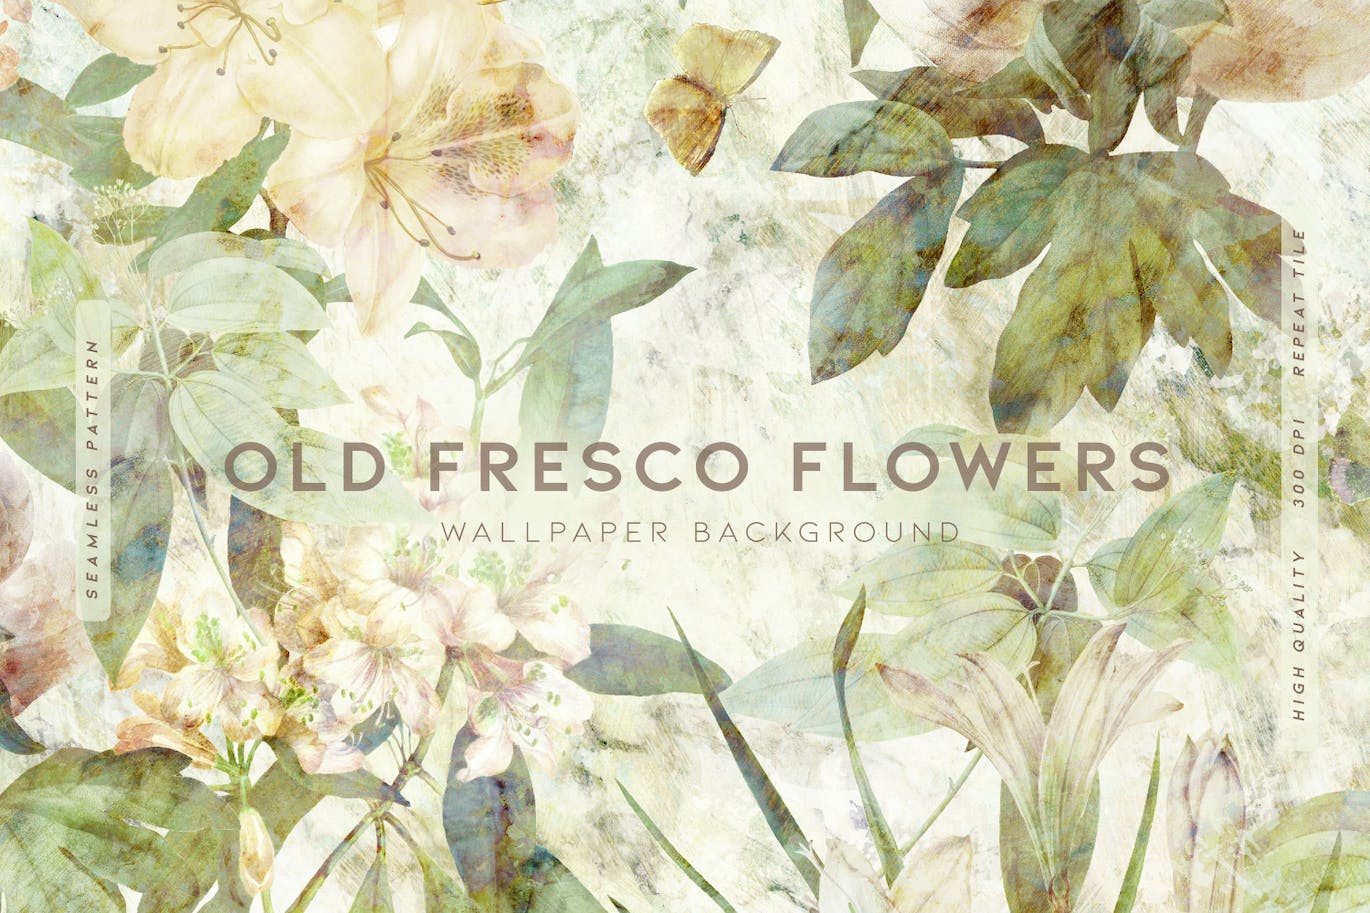 古老壁画花卉图案素材 Old Fresco Flowers 图片素材 第1张